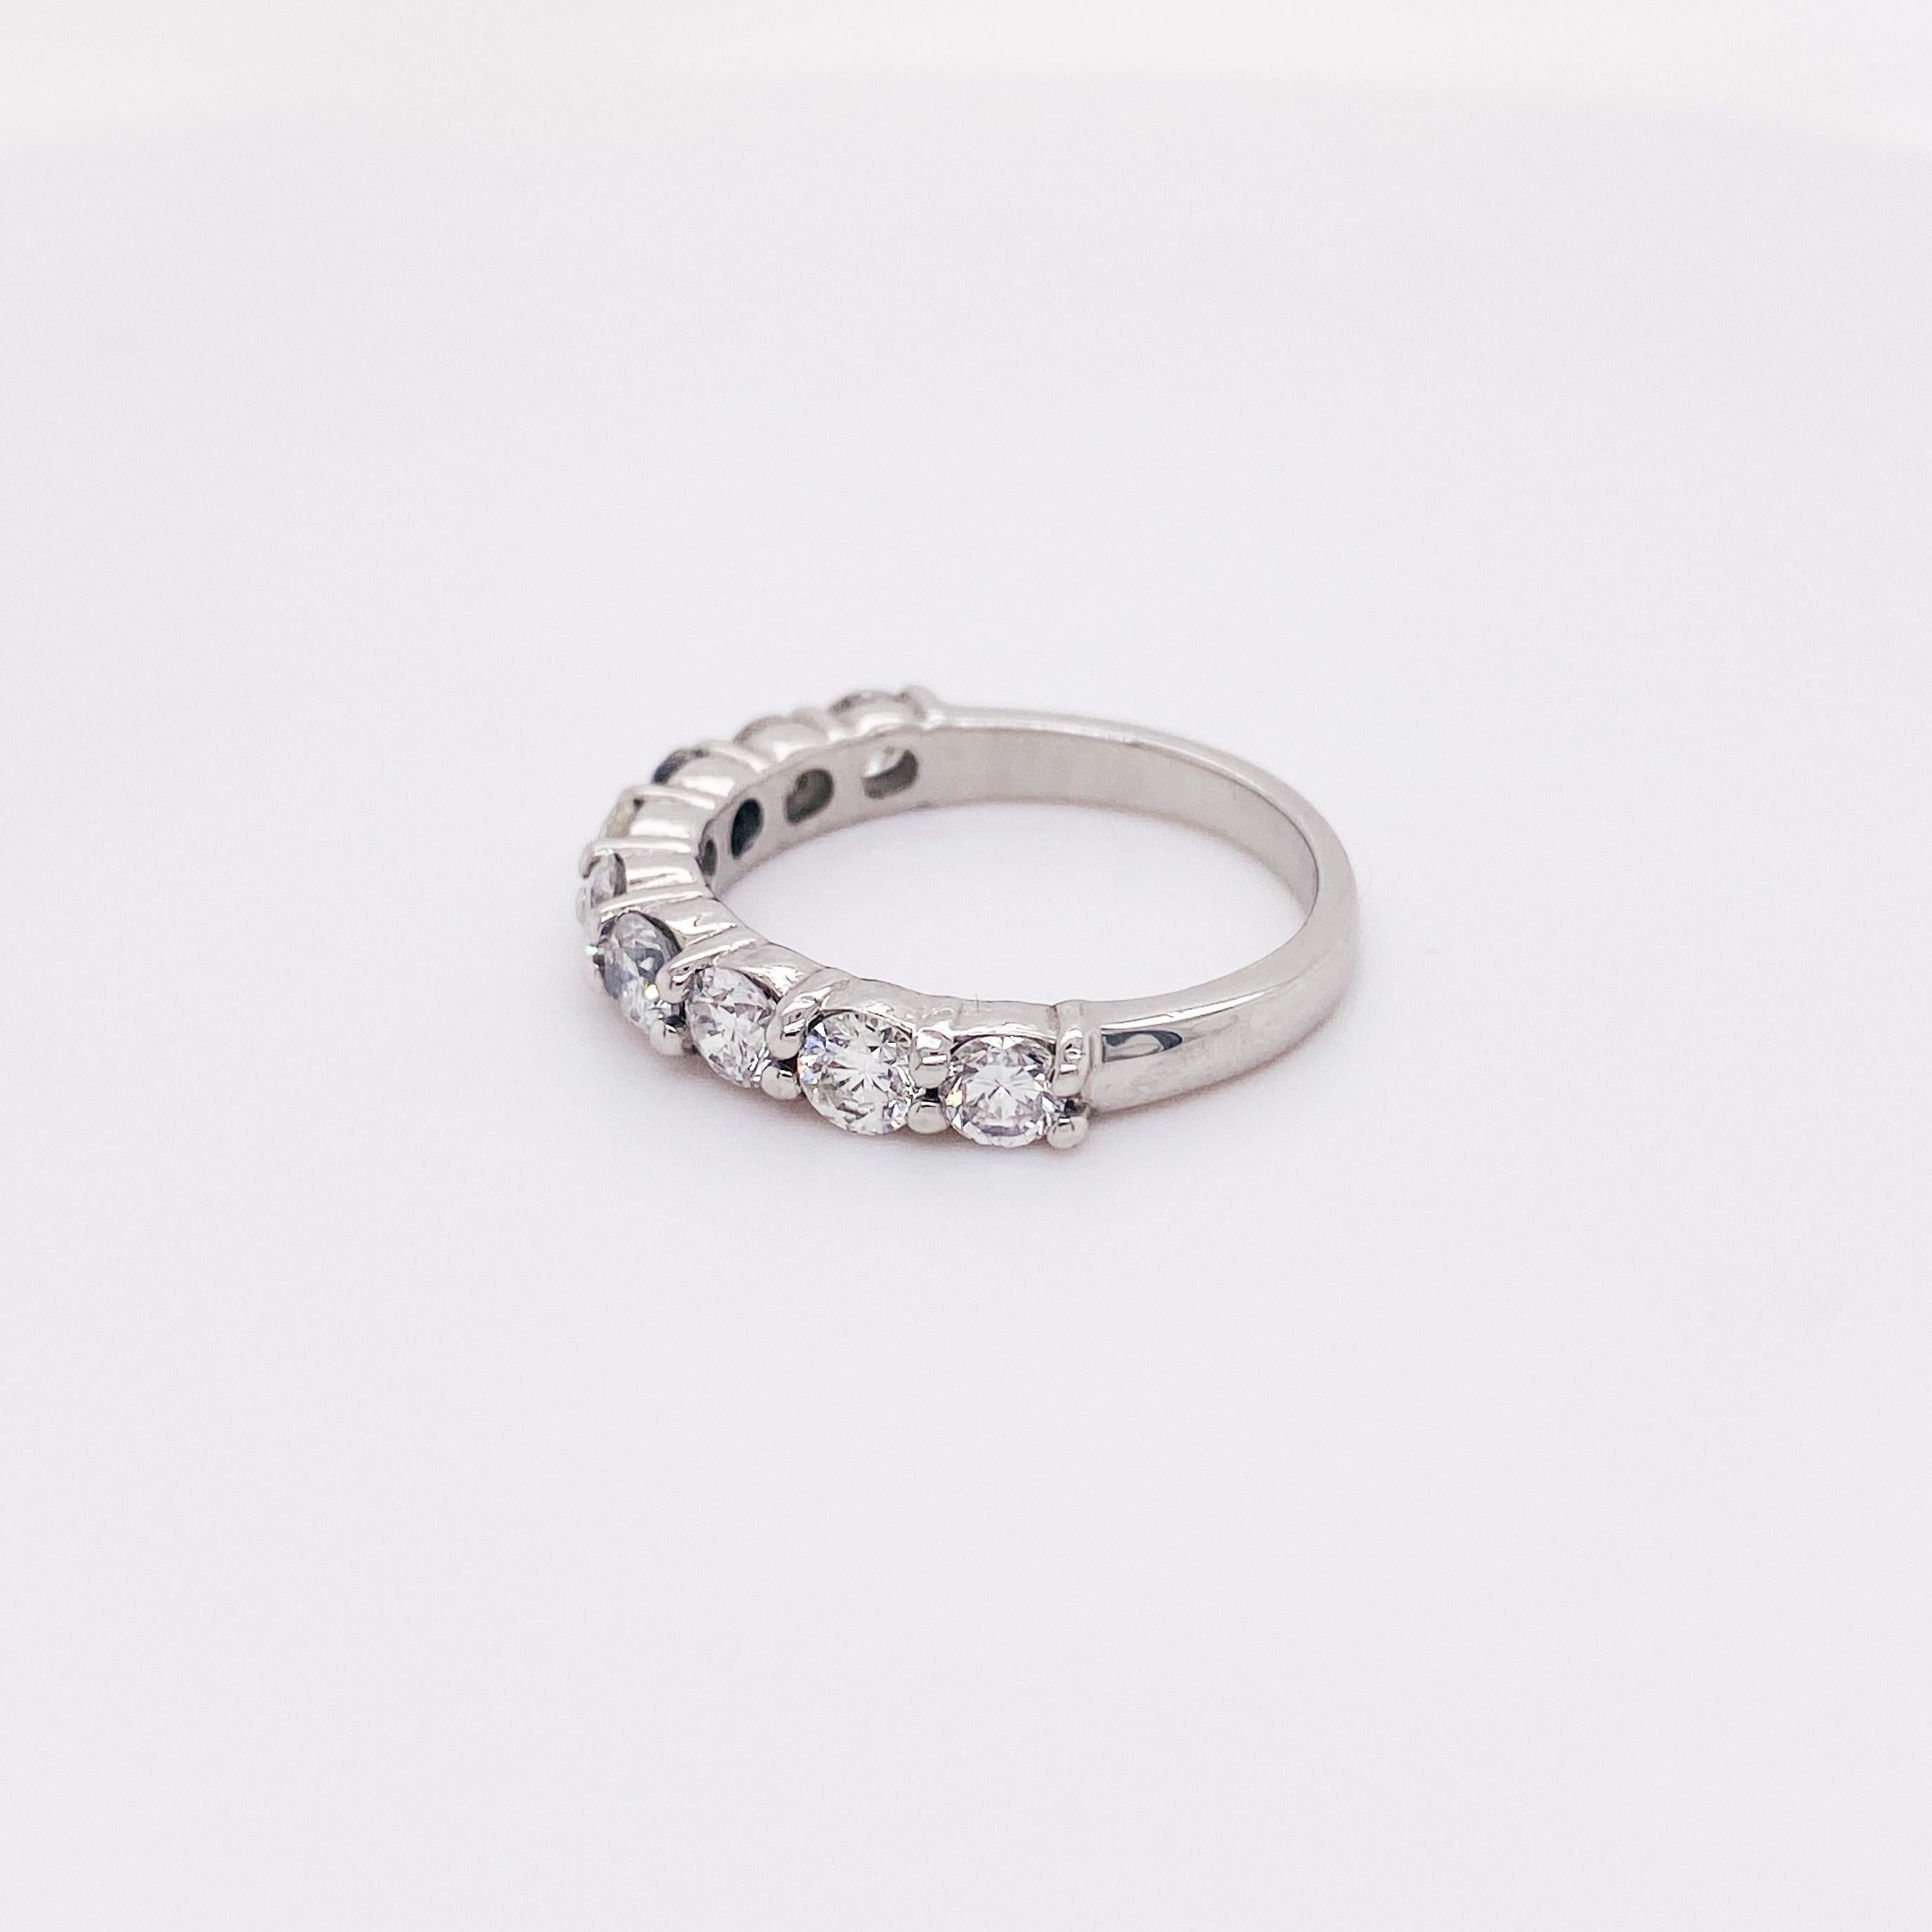 Rocken Sie Ihre Diamanten und stellen Sie ein wunderschönes Ringset zusammen mit diesem herrlichen, starken und robusten Platinring. Neun Diamanten sitzen in der Mitte des Rings mit minimalistischen gemeinsamen Zacken. Mit einer Breite von 3,3 mm